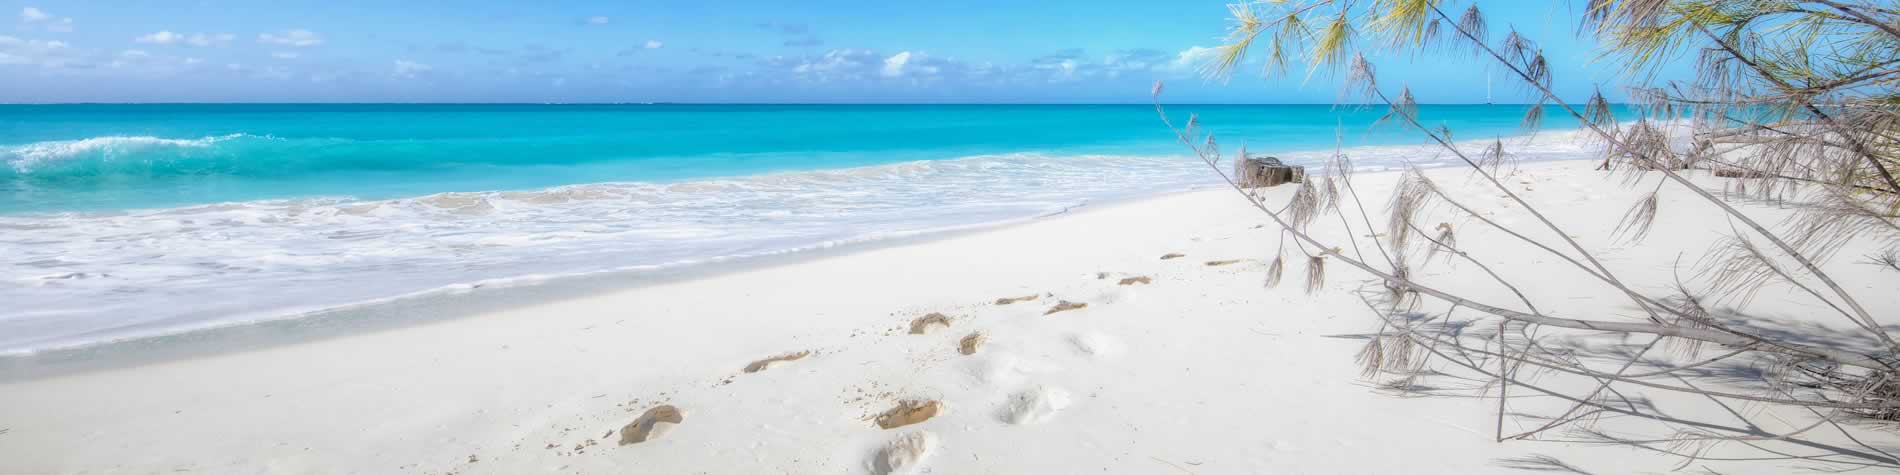 Huellas en las finas arenas blancas de la playa